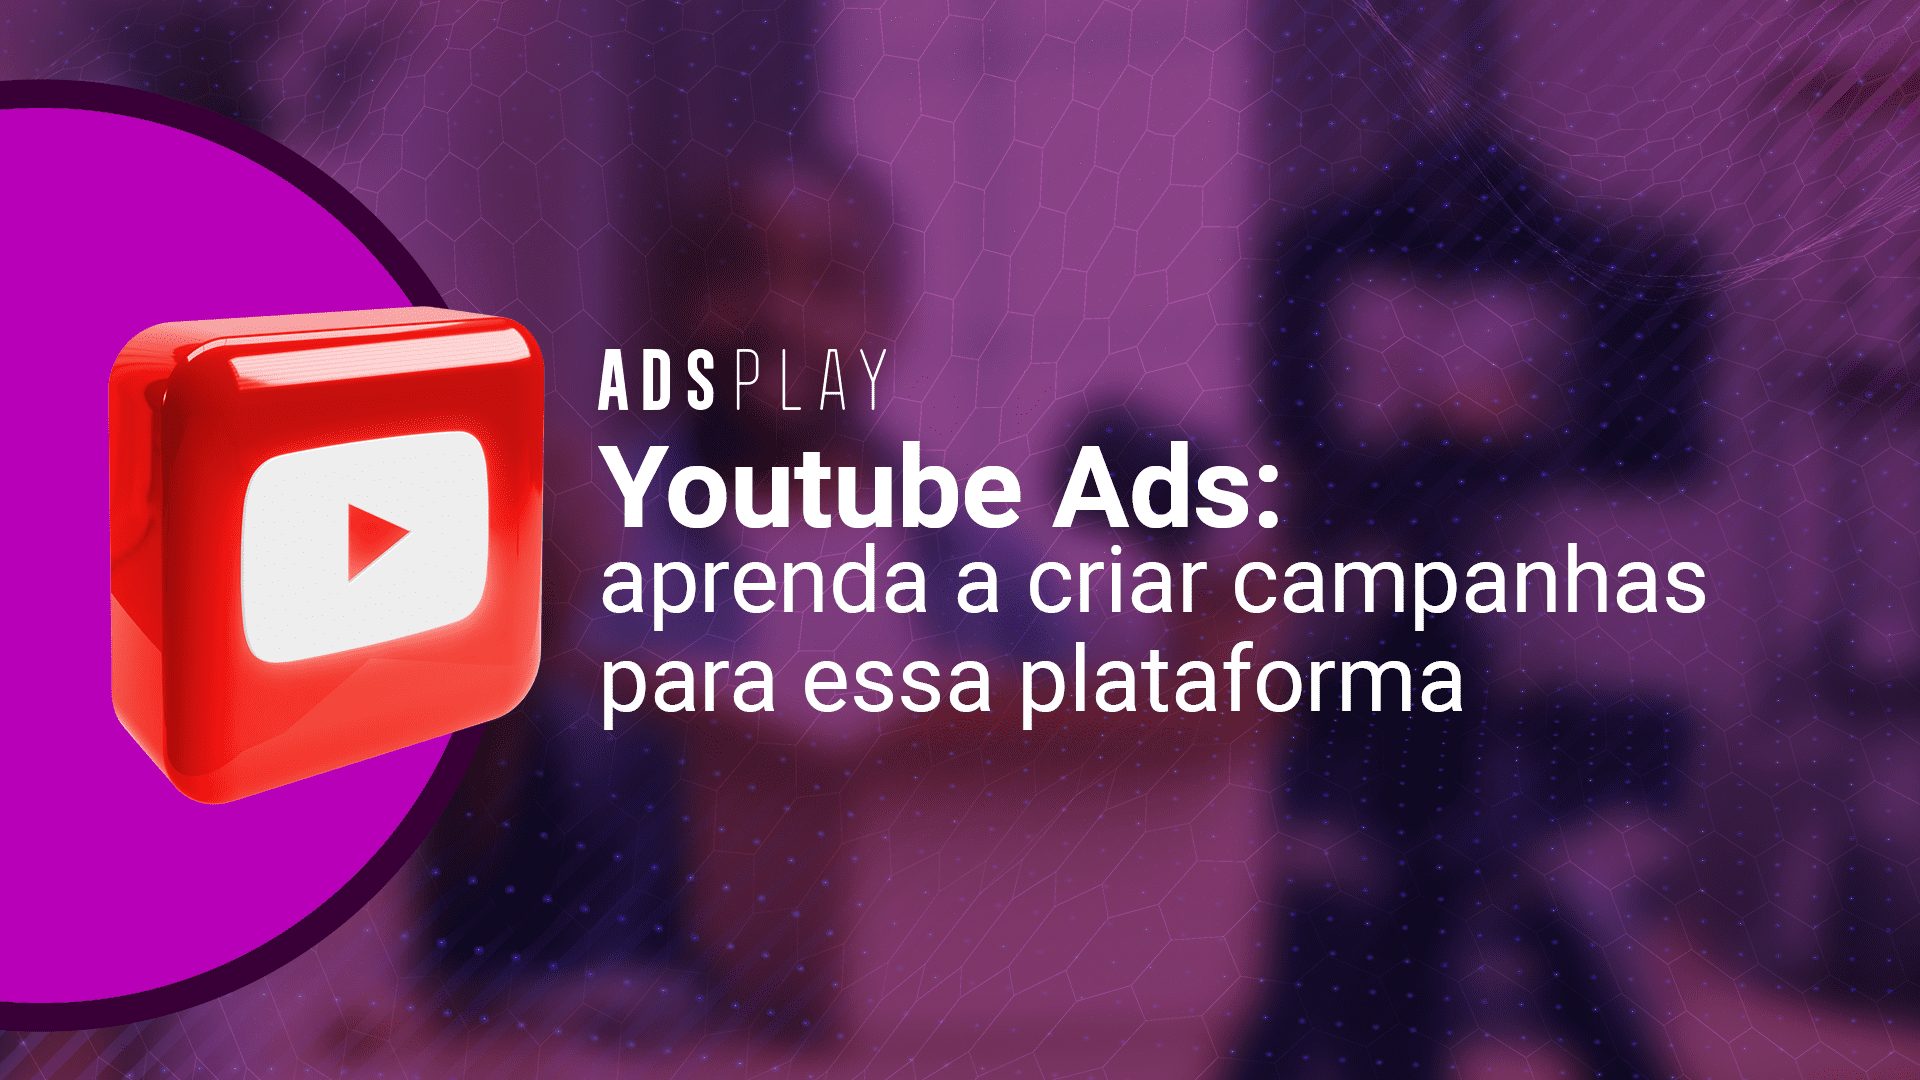 Youtube ads: aprenda a criar campanhas para essa plataforma